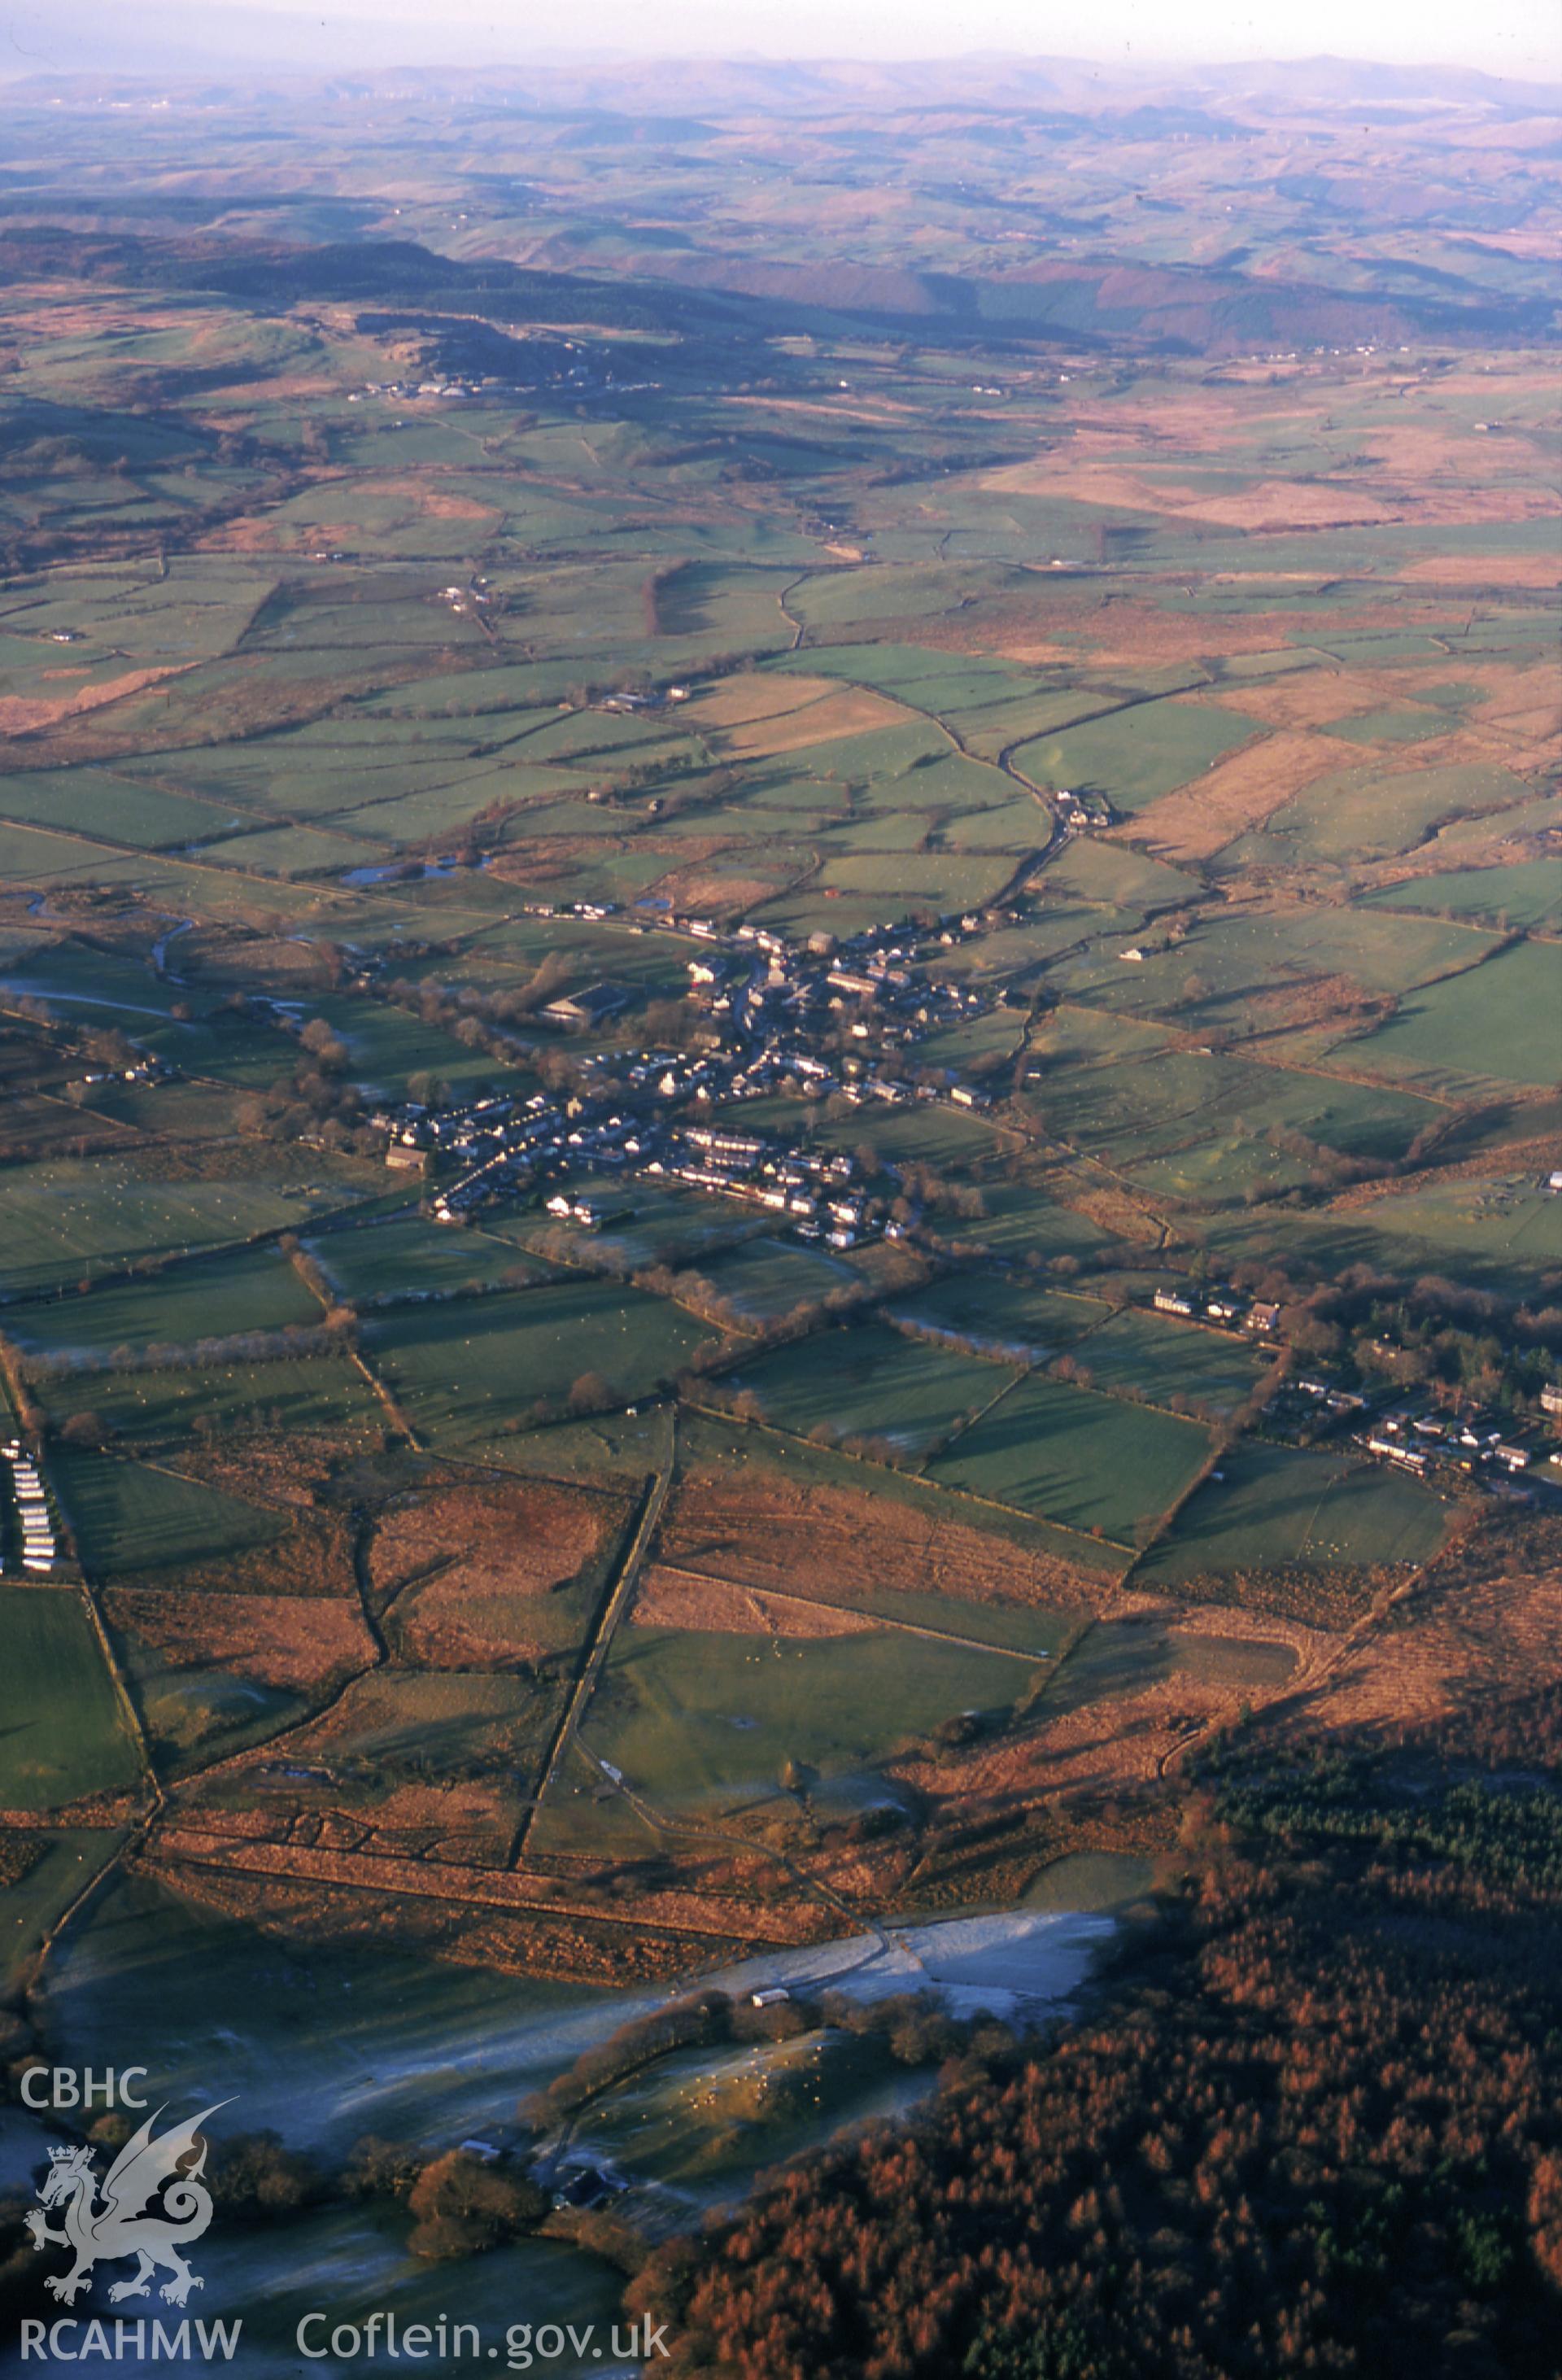 RCAHMW colour slide oblique aerial photograph of Pontrhydfendigaid, taken on 11/01/1999 by Toby Driver